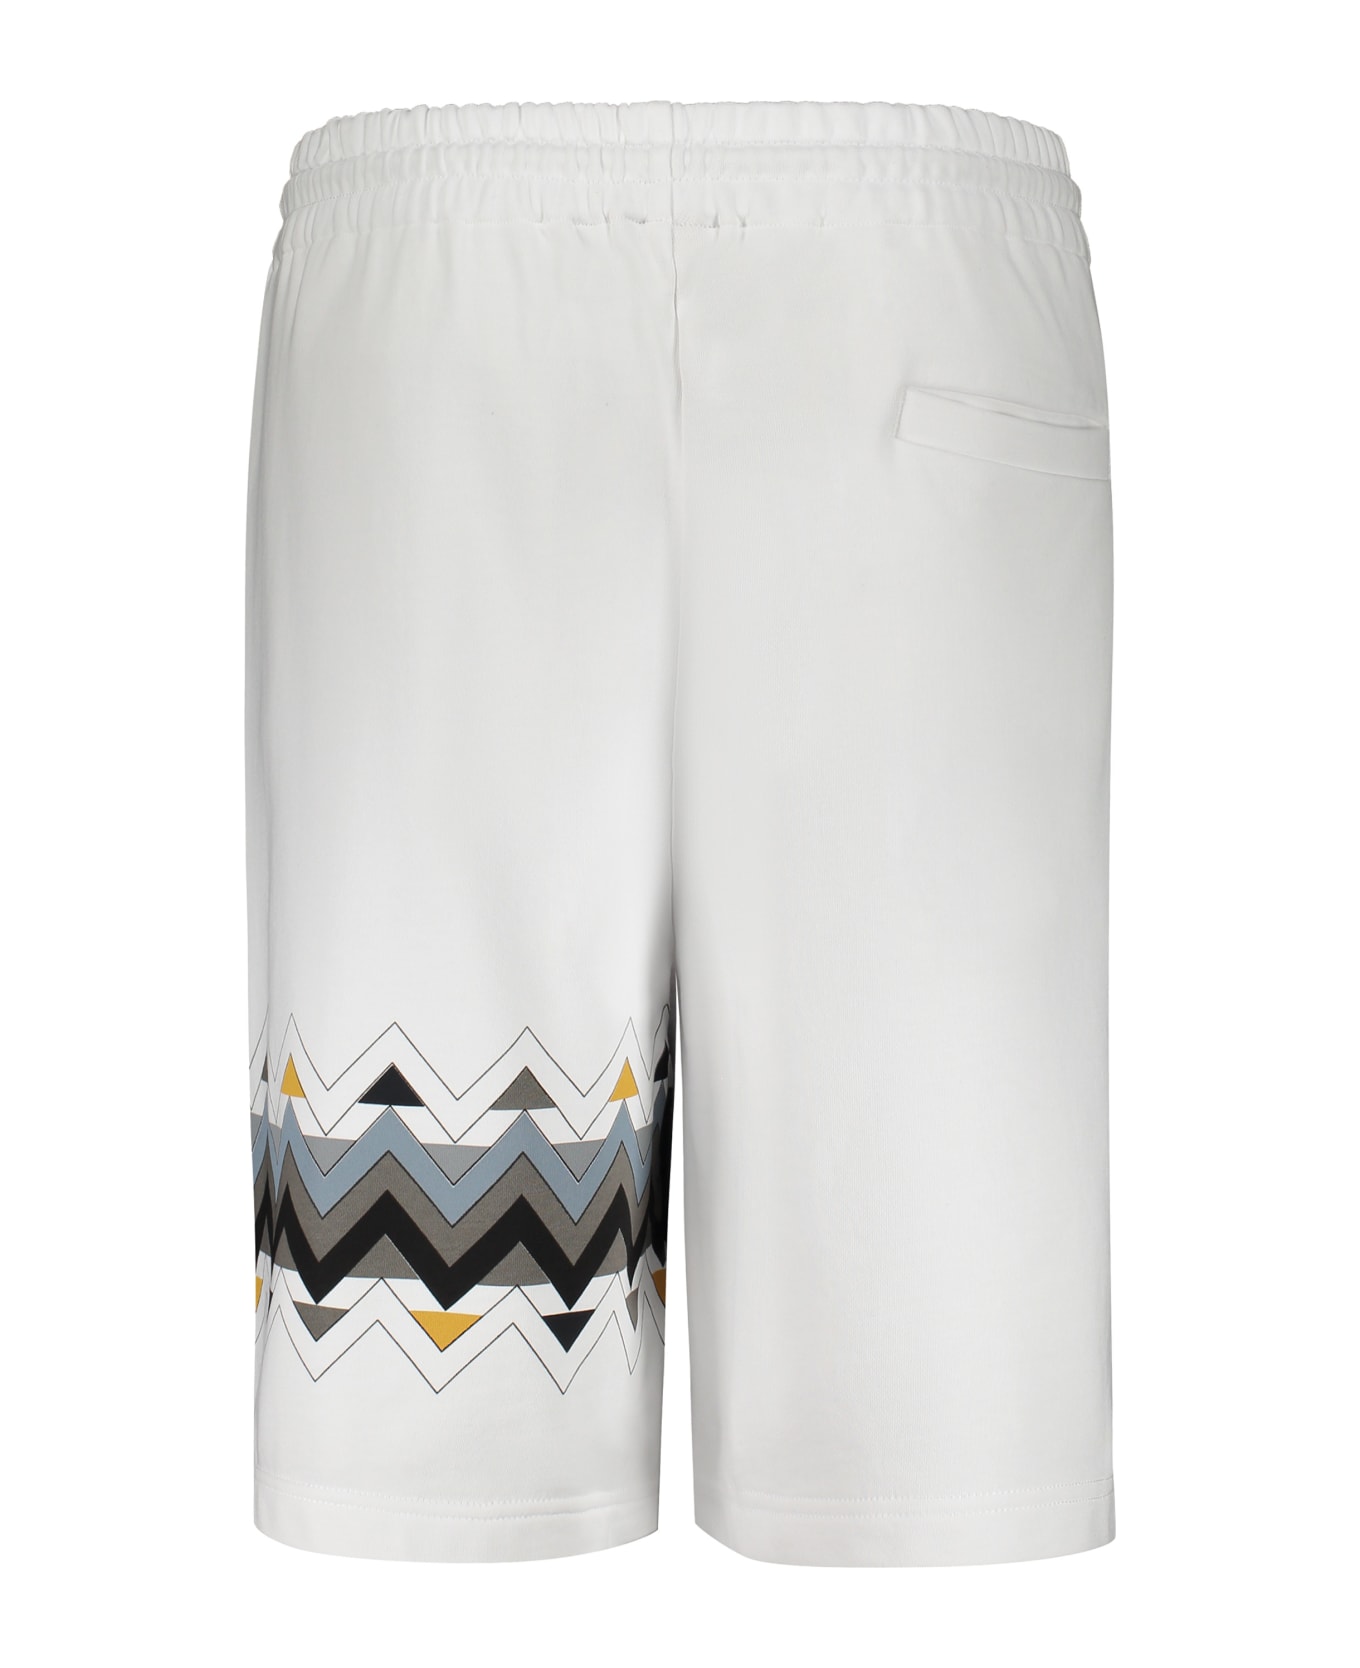 Missoni Cotton Bermuda Shorts - White ショートパンツ